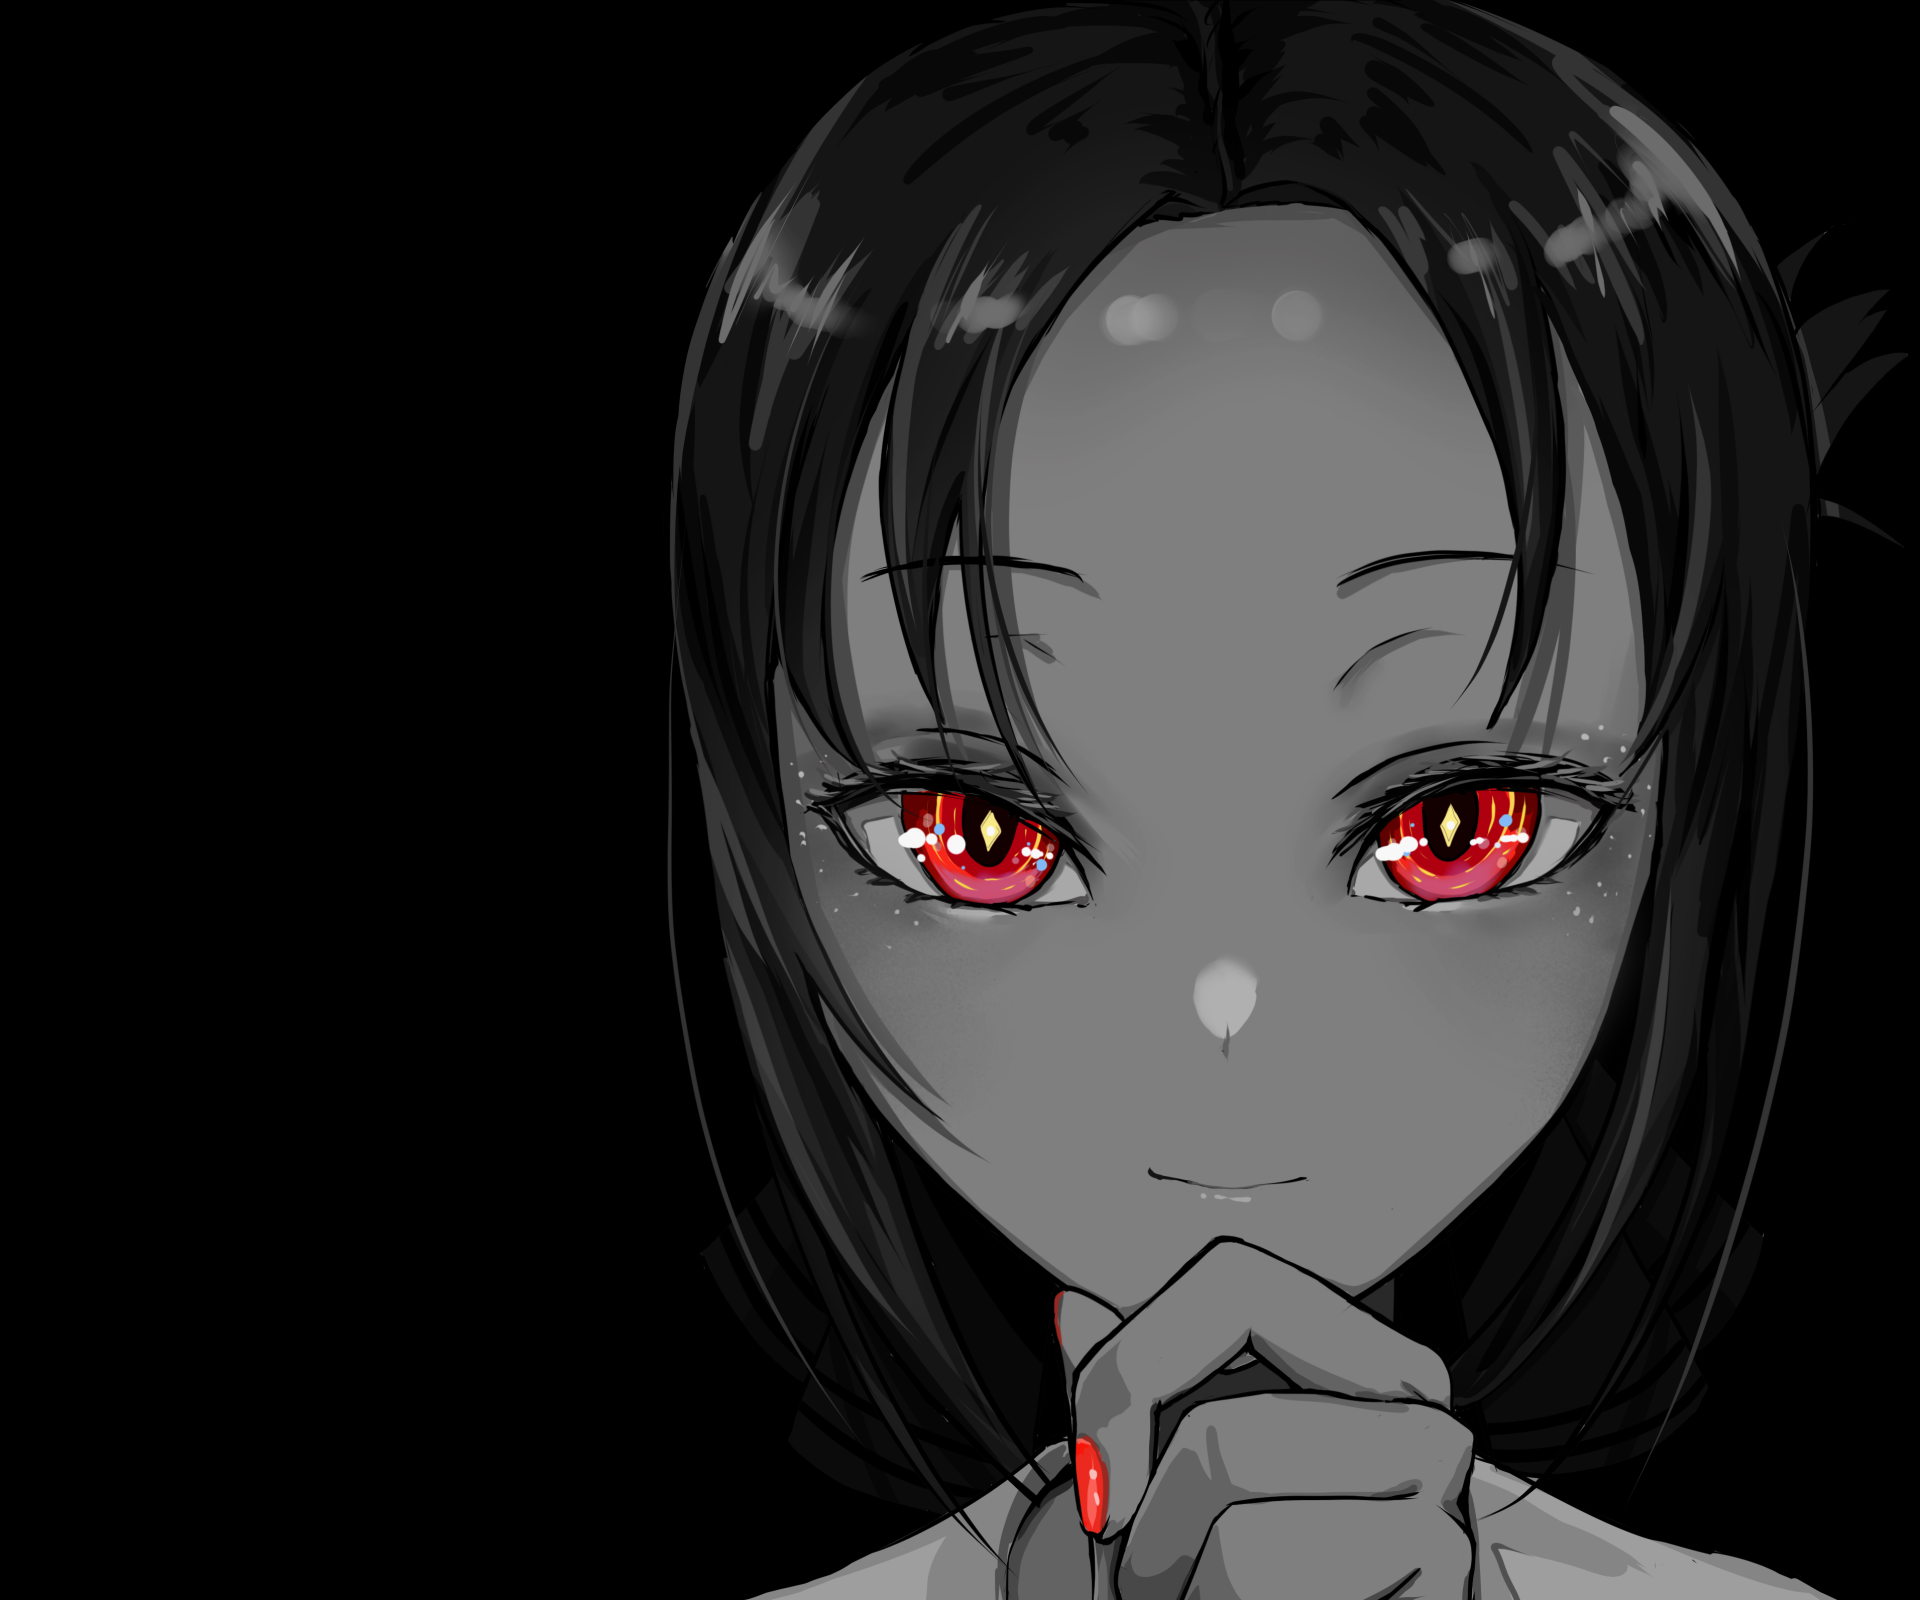 Anime 1920x1600 Kaguya-Sama: Love is War anime anime girls selective coloring red eyes face closeup looking at viewer Kaguya Shinomiya